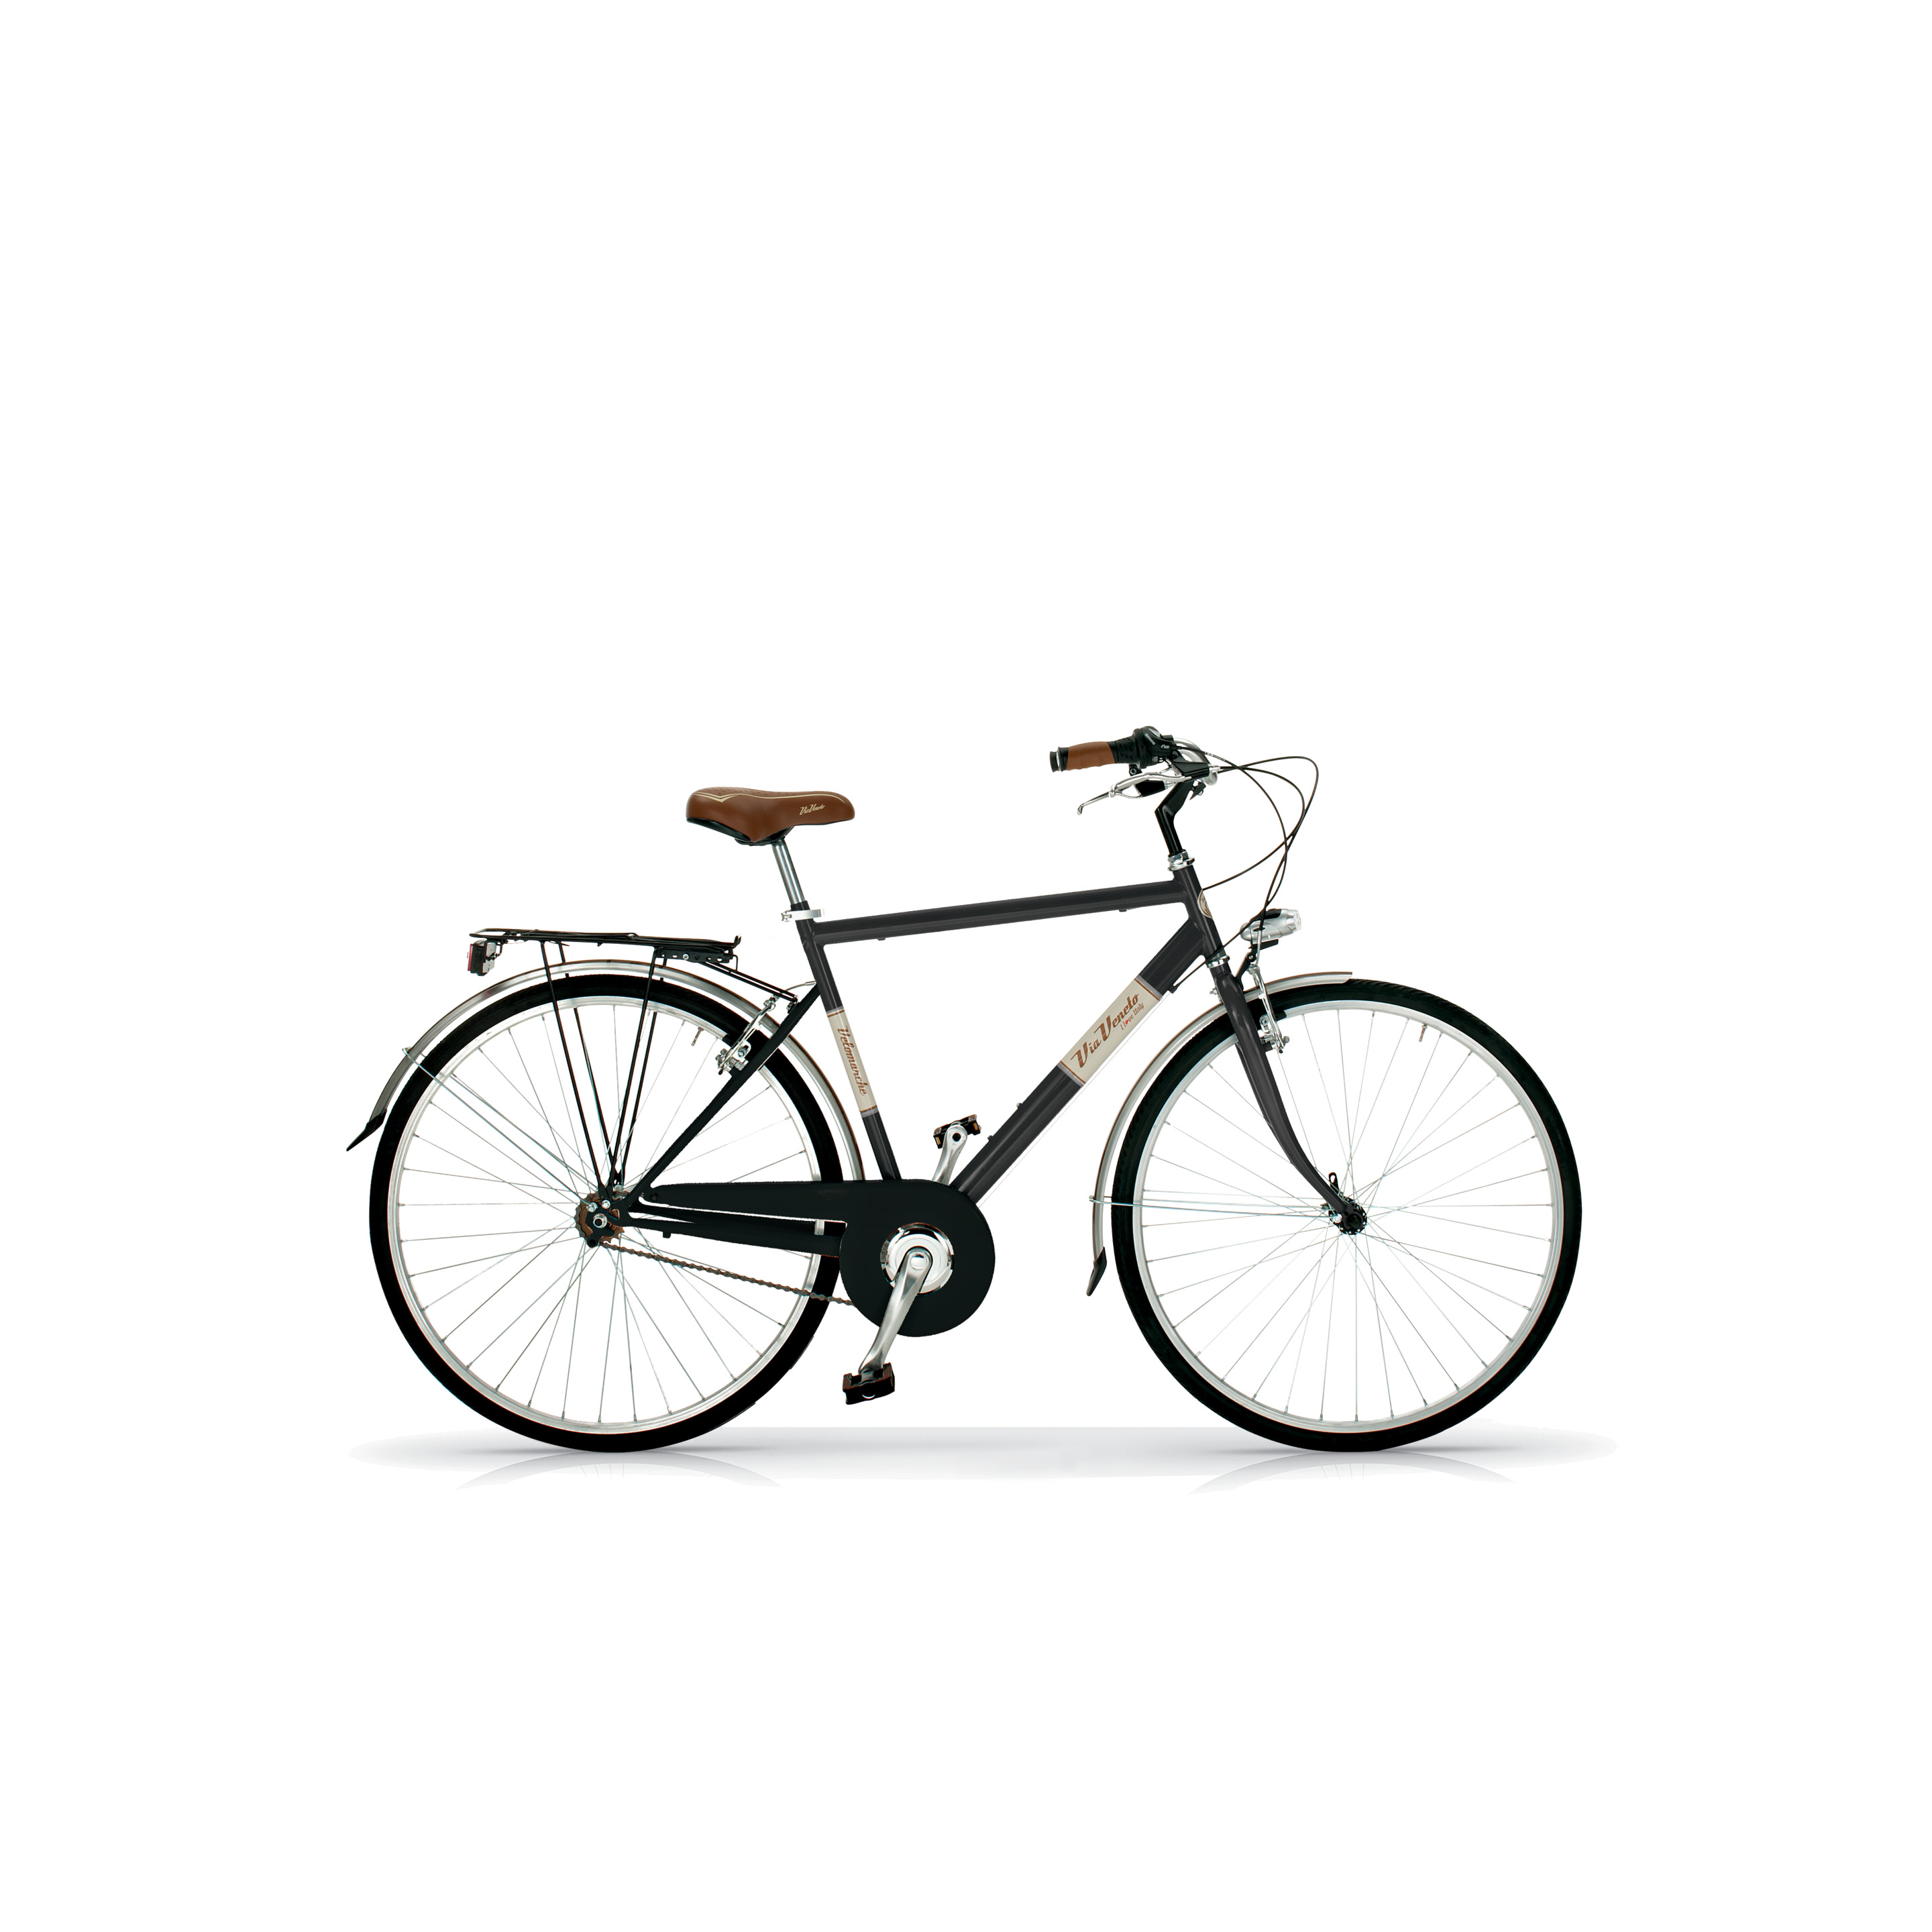 Bicicleta Via Veneto 605man, Cuadro De Acero De 54cm, Ruedas De 700x35c, 6 Velocidades Negra